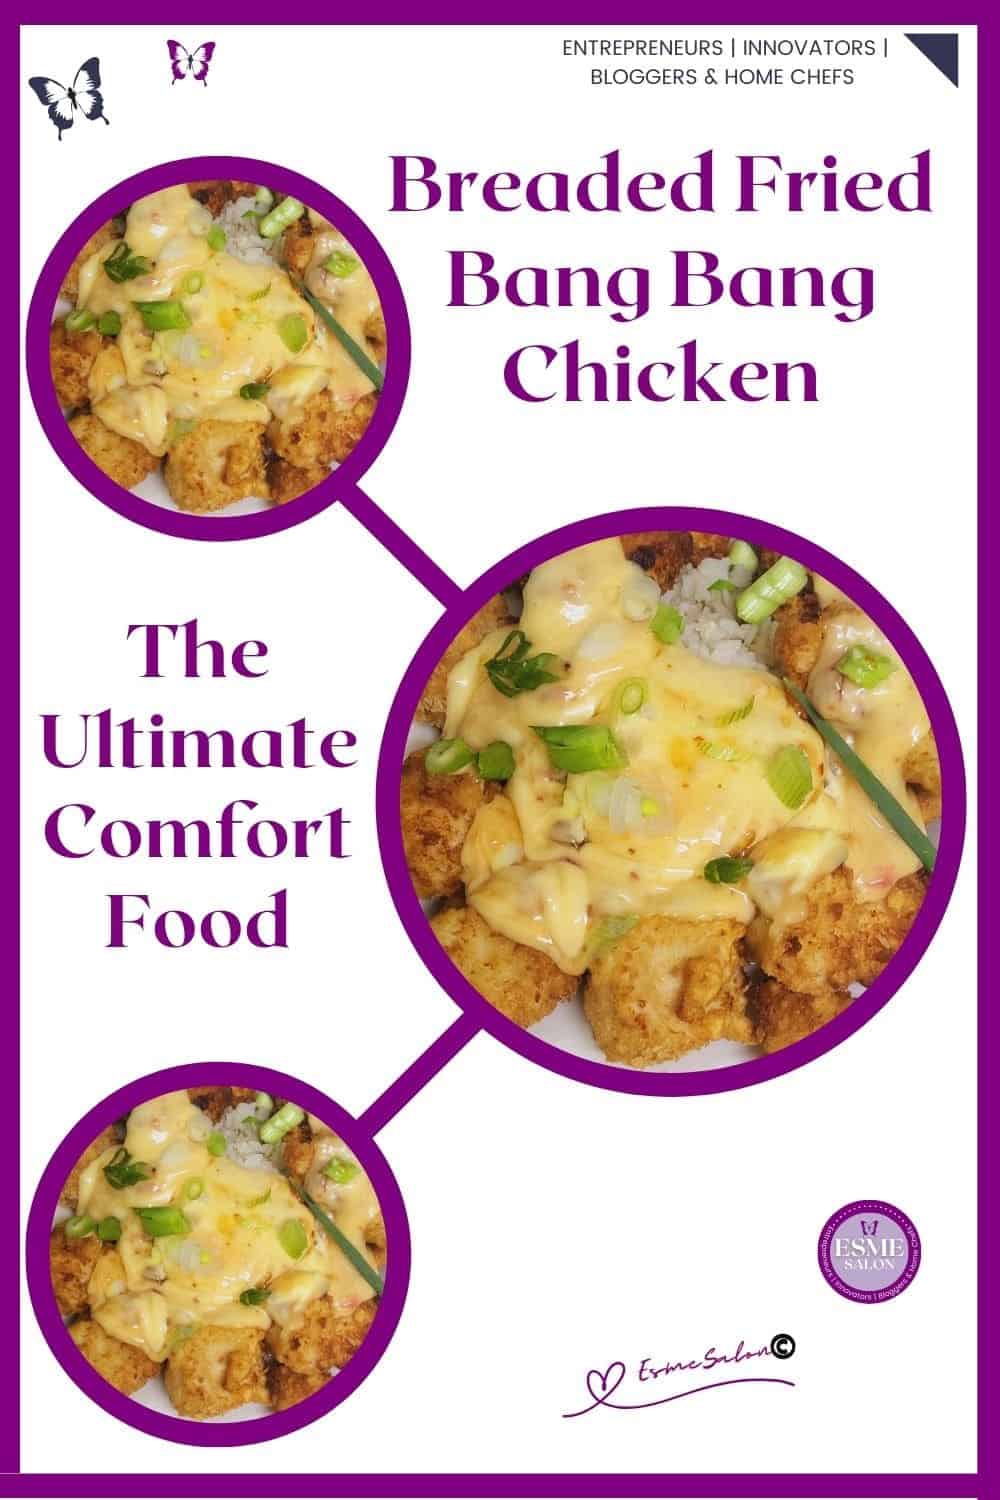 an image of crispy bang bang chicken with a mayonnaise chili sauce